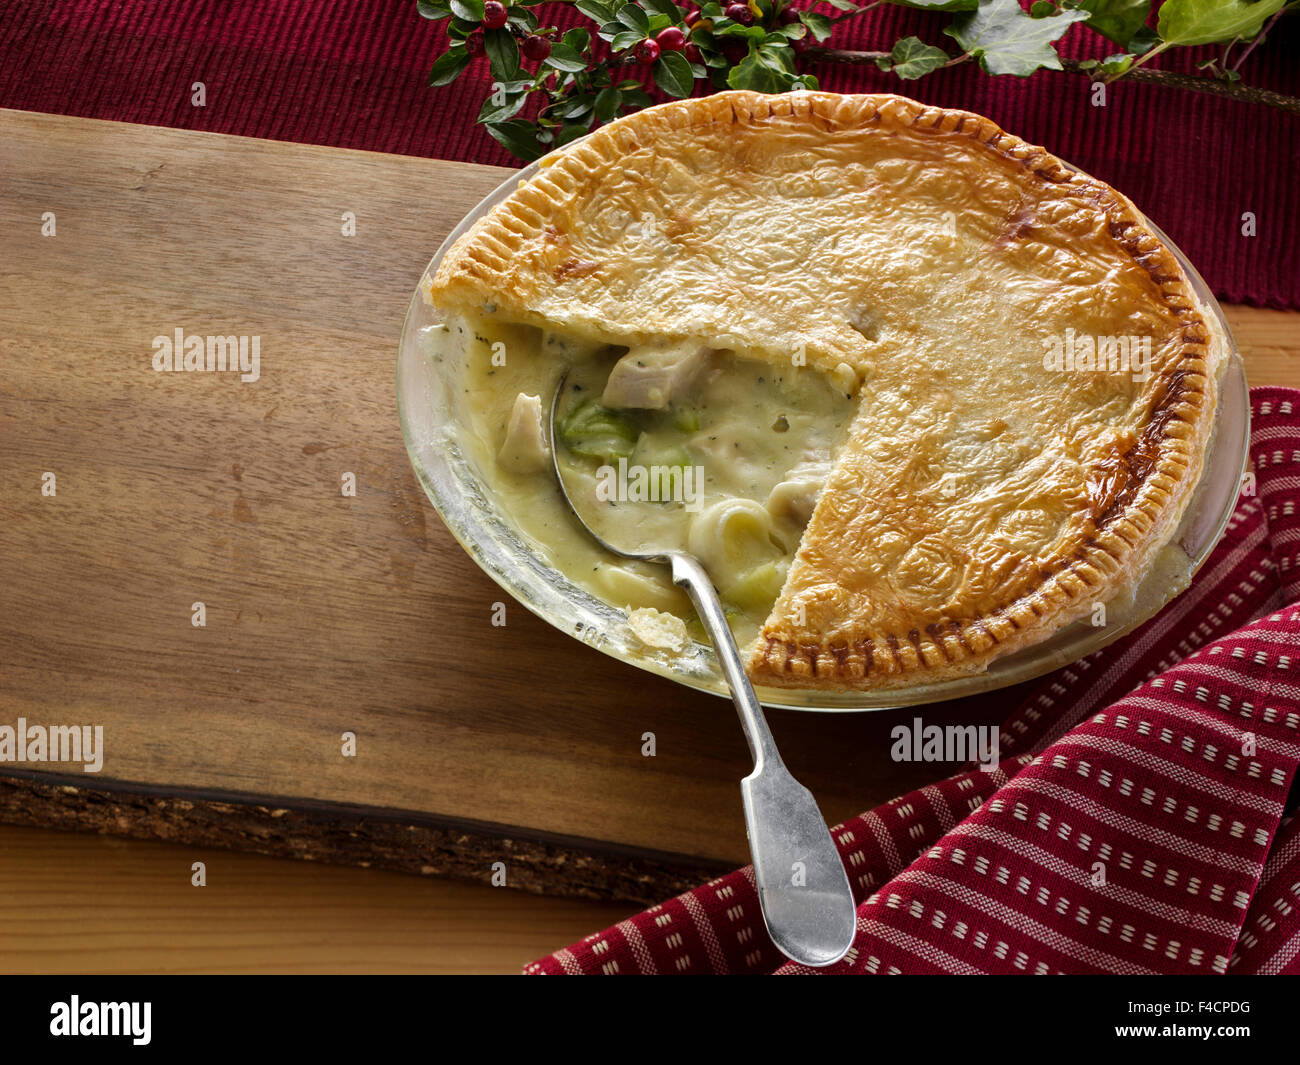 Turkey pie Stock Photo